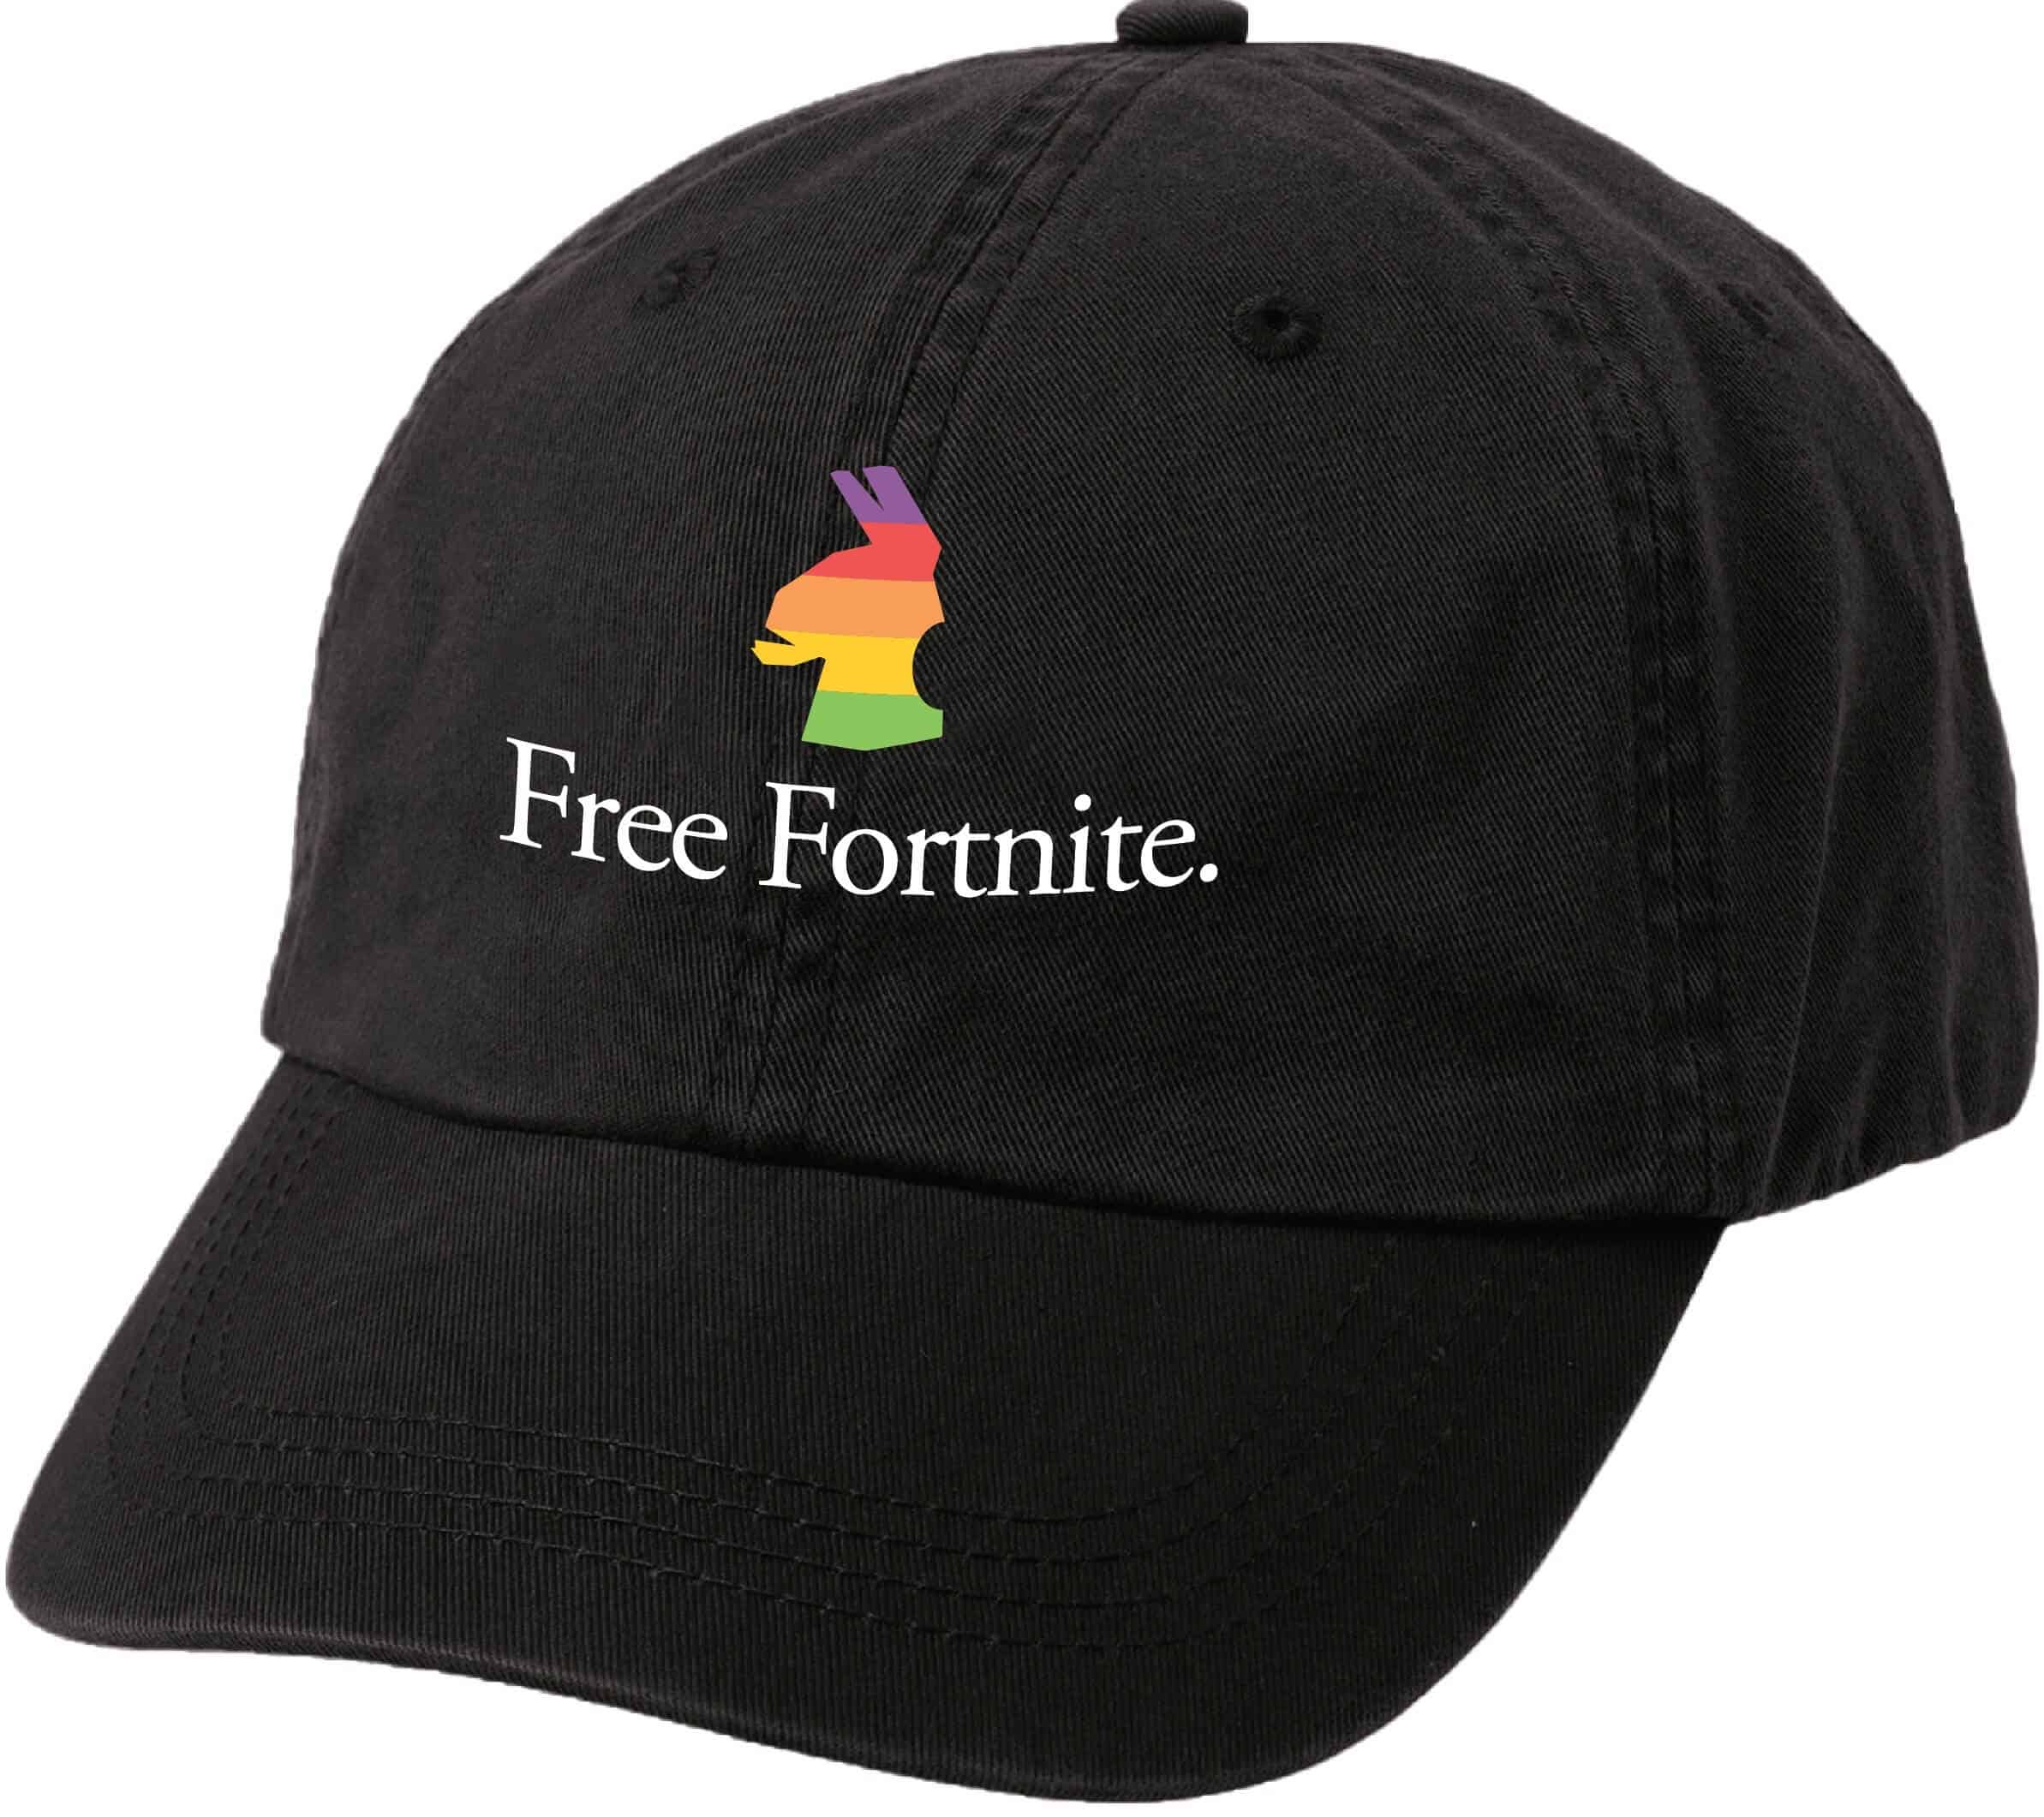 Δωρεάν καπέλο fortnite